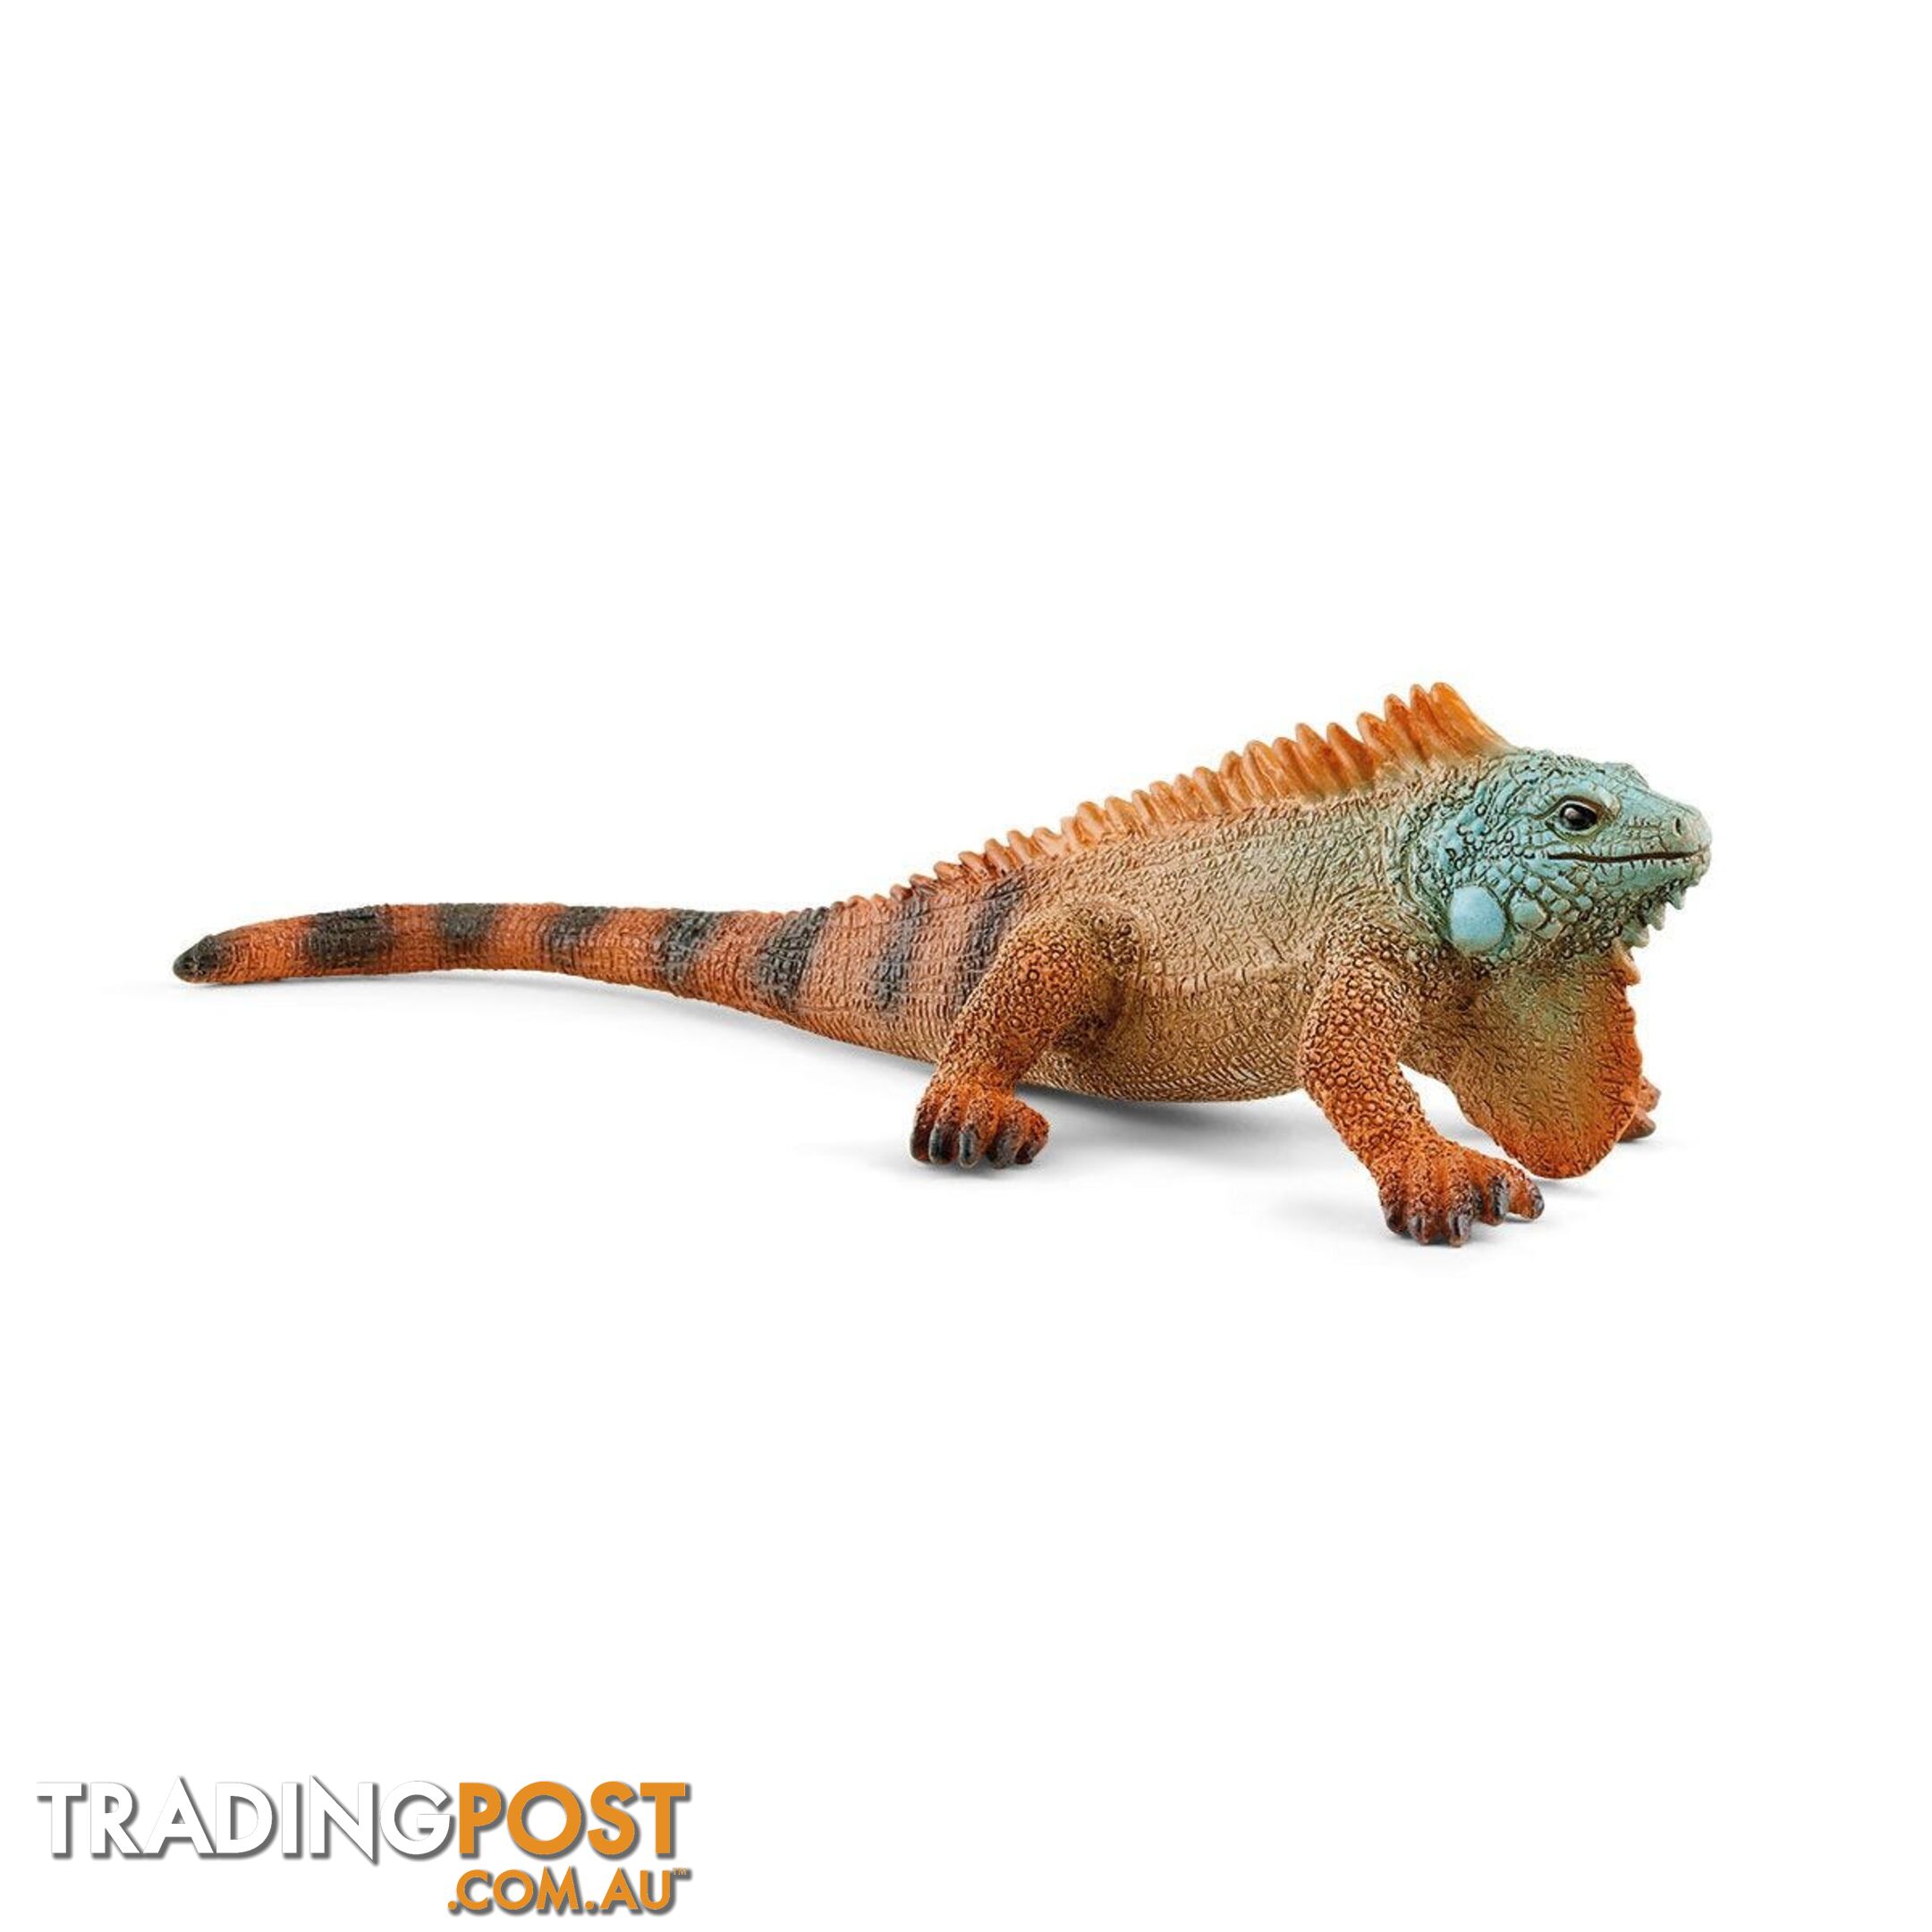 Schleich - Iguana Lizard Figurine - Mdsc14854 - 4059433454764